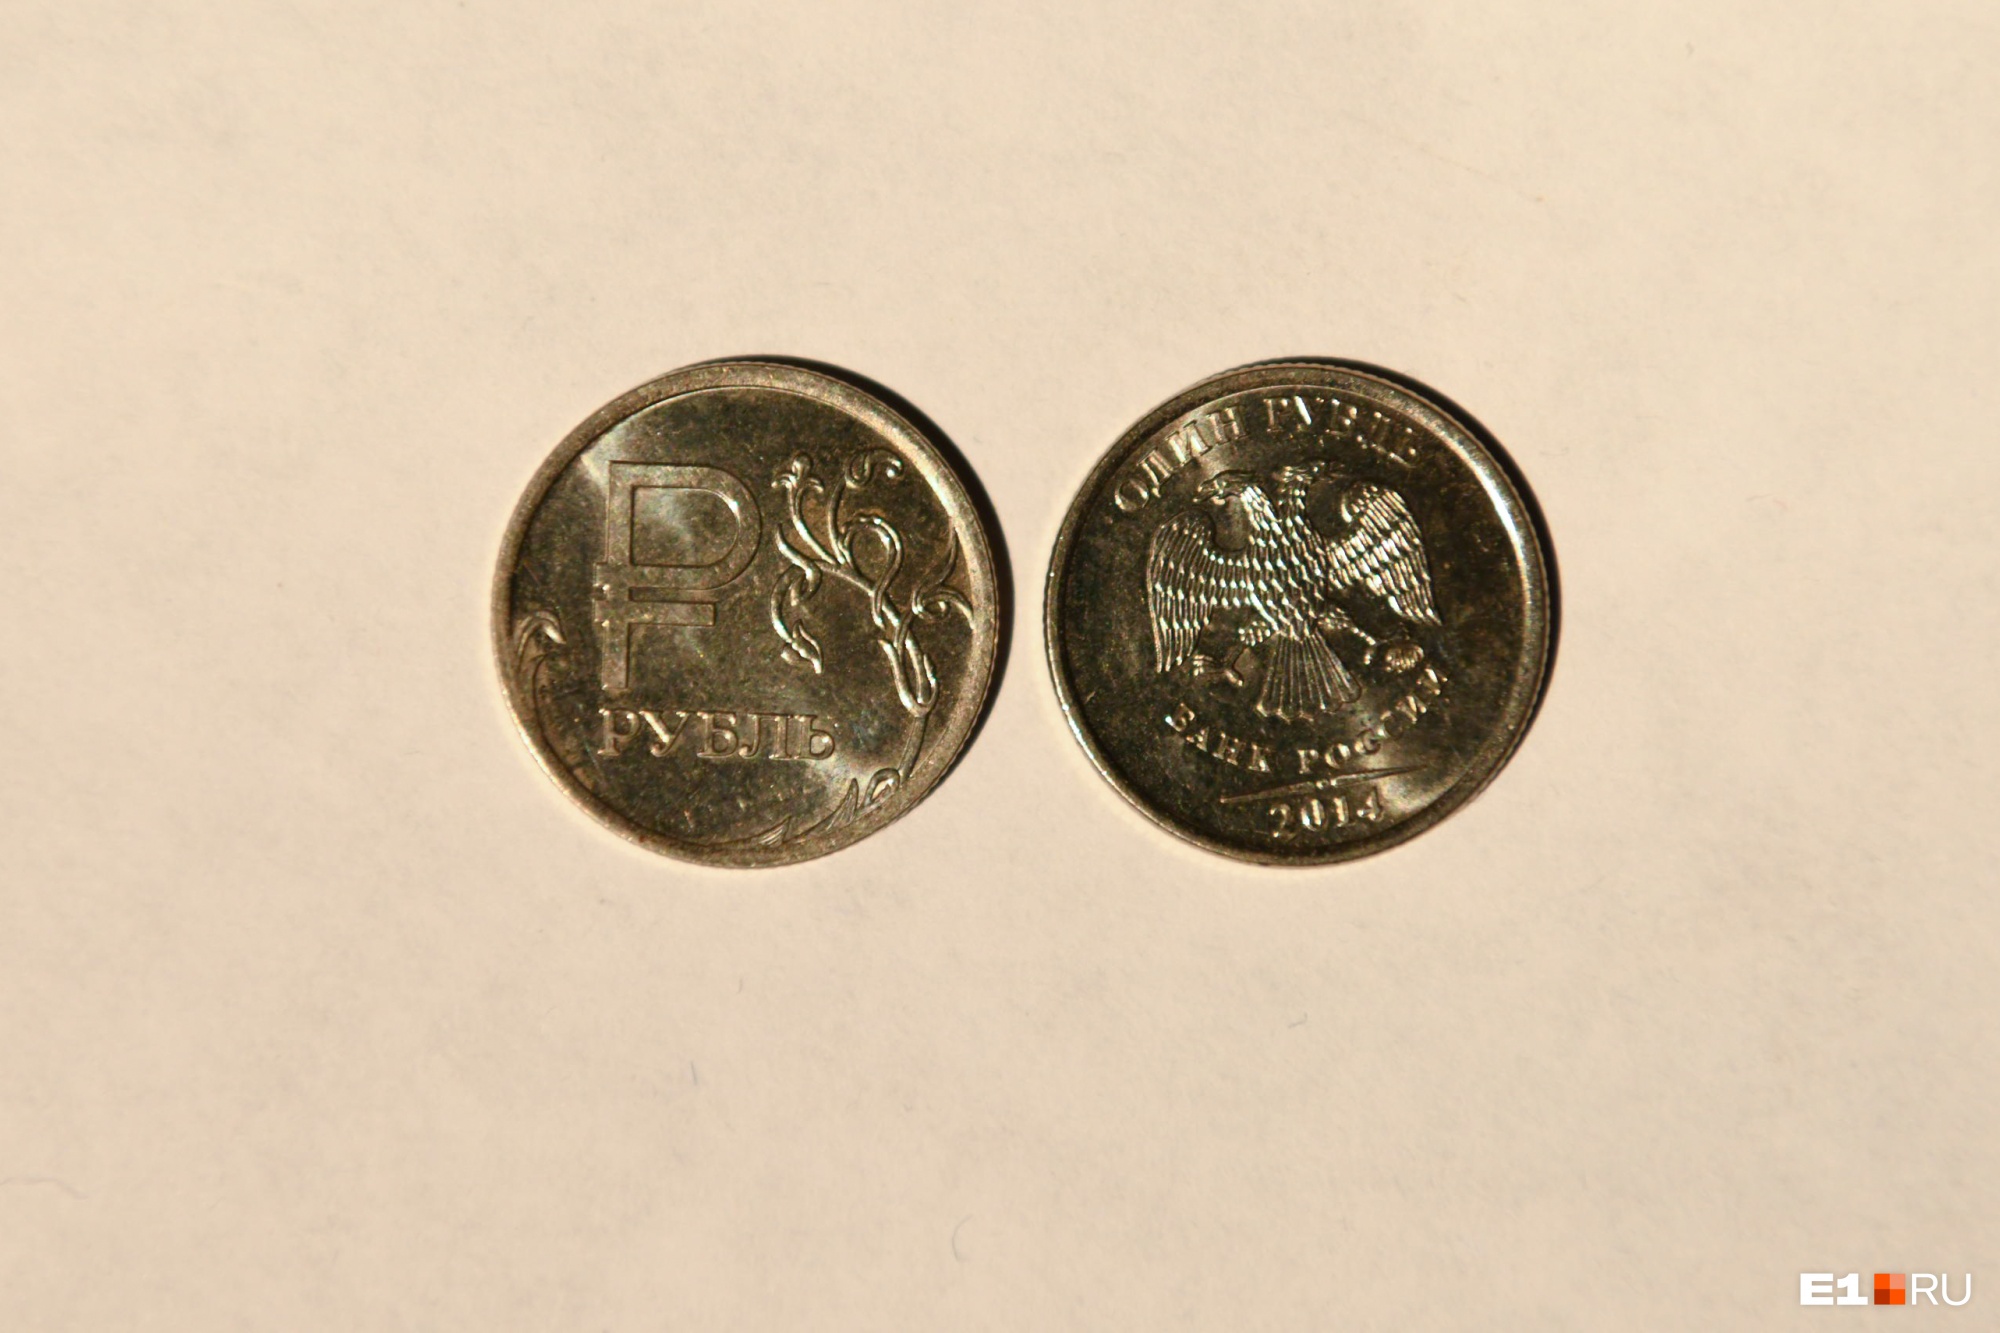 5 рублей имеющие ценность. Соберите монеты 217. Какие 5 рублей имеют ценность юбилейные. Откуда монета 30 пара. Рубли 1999 почему мало стоят но редкие.